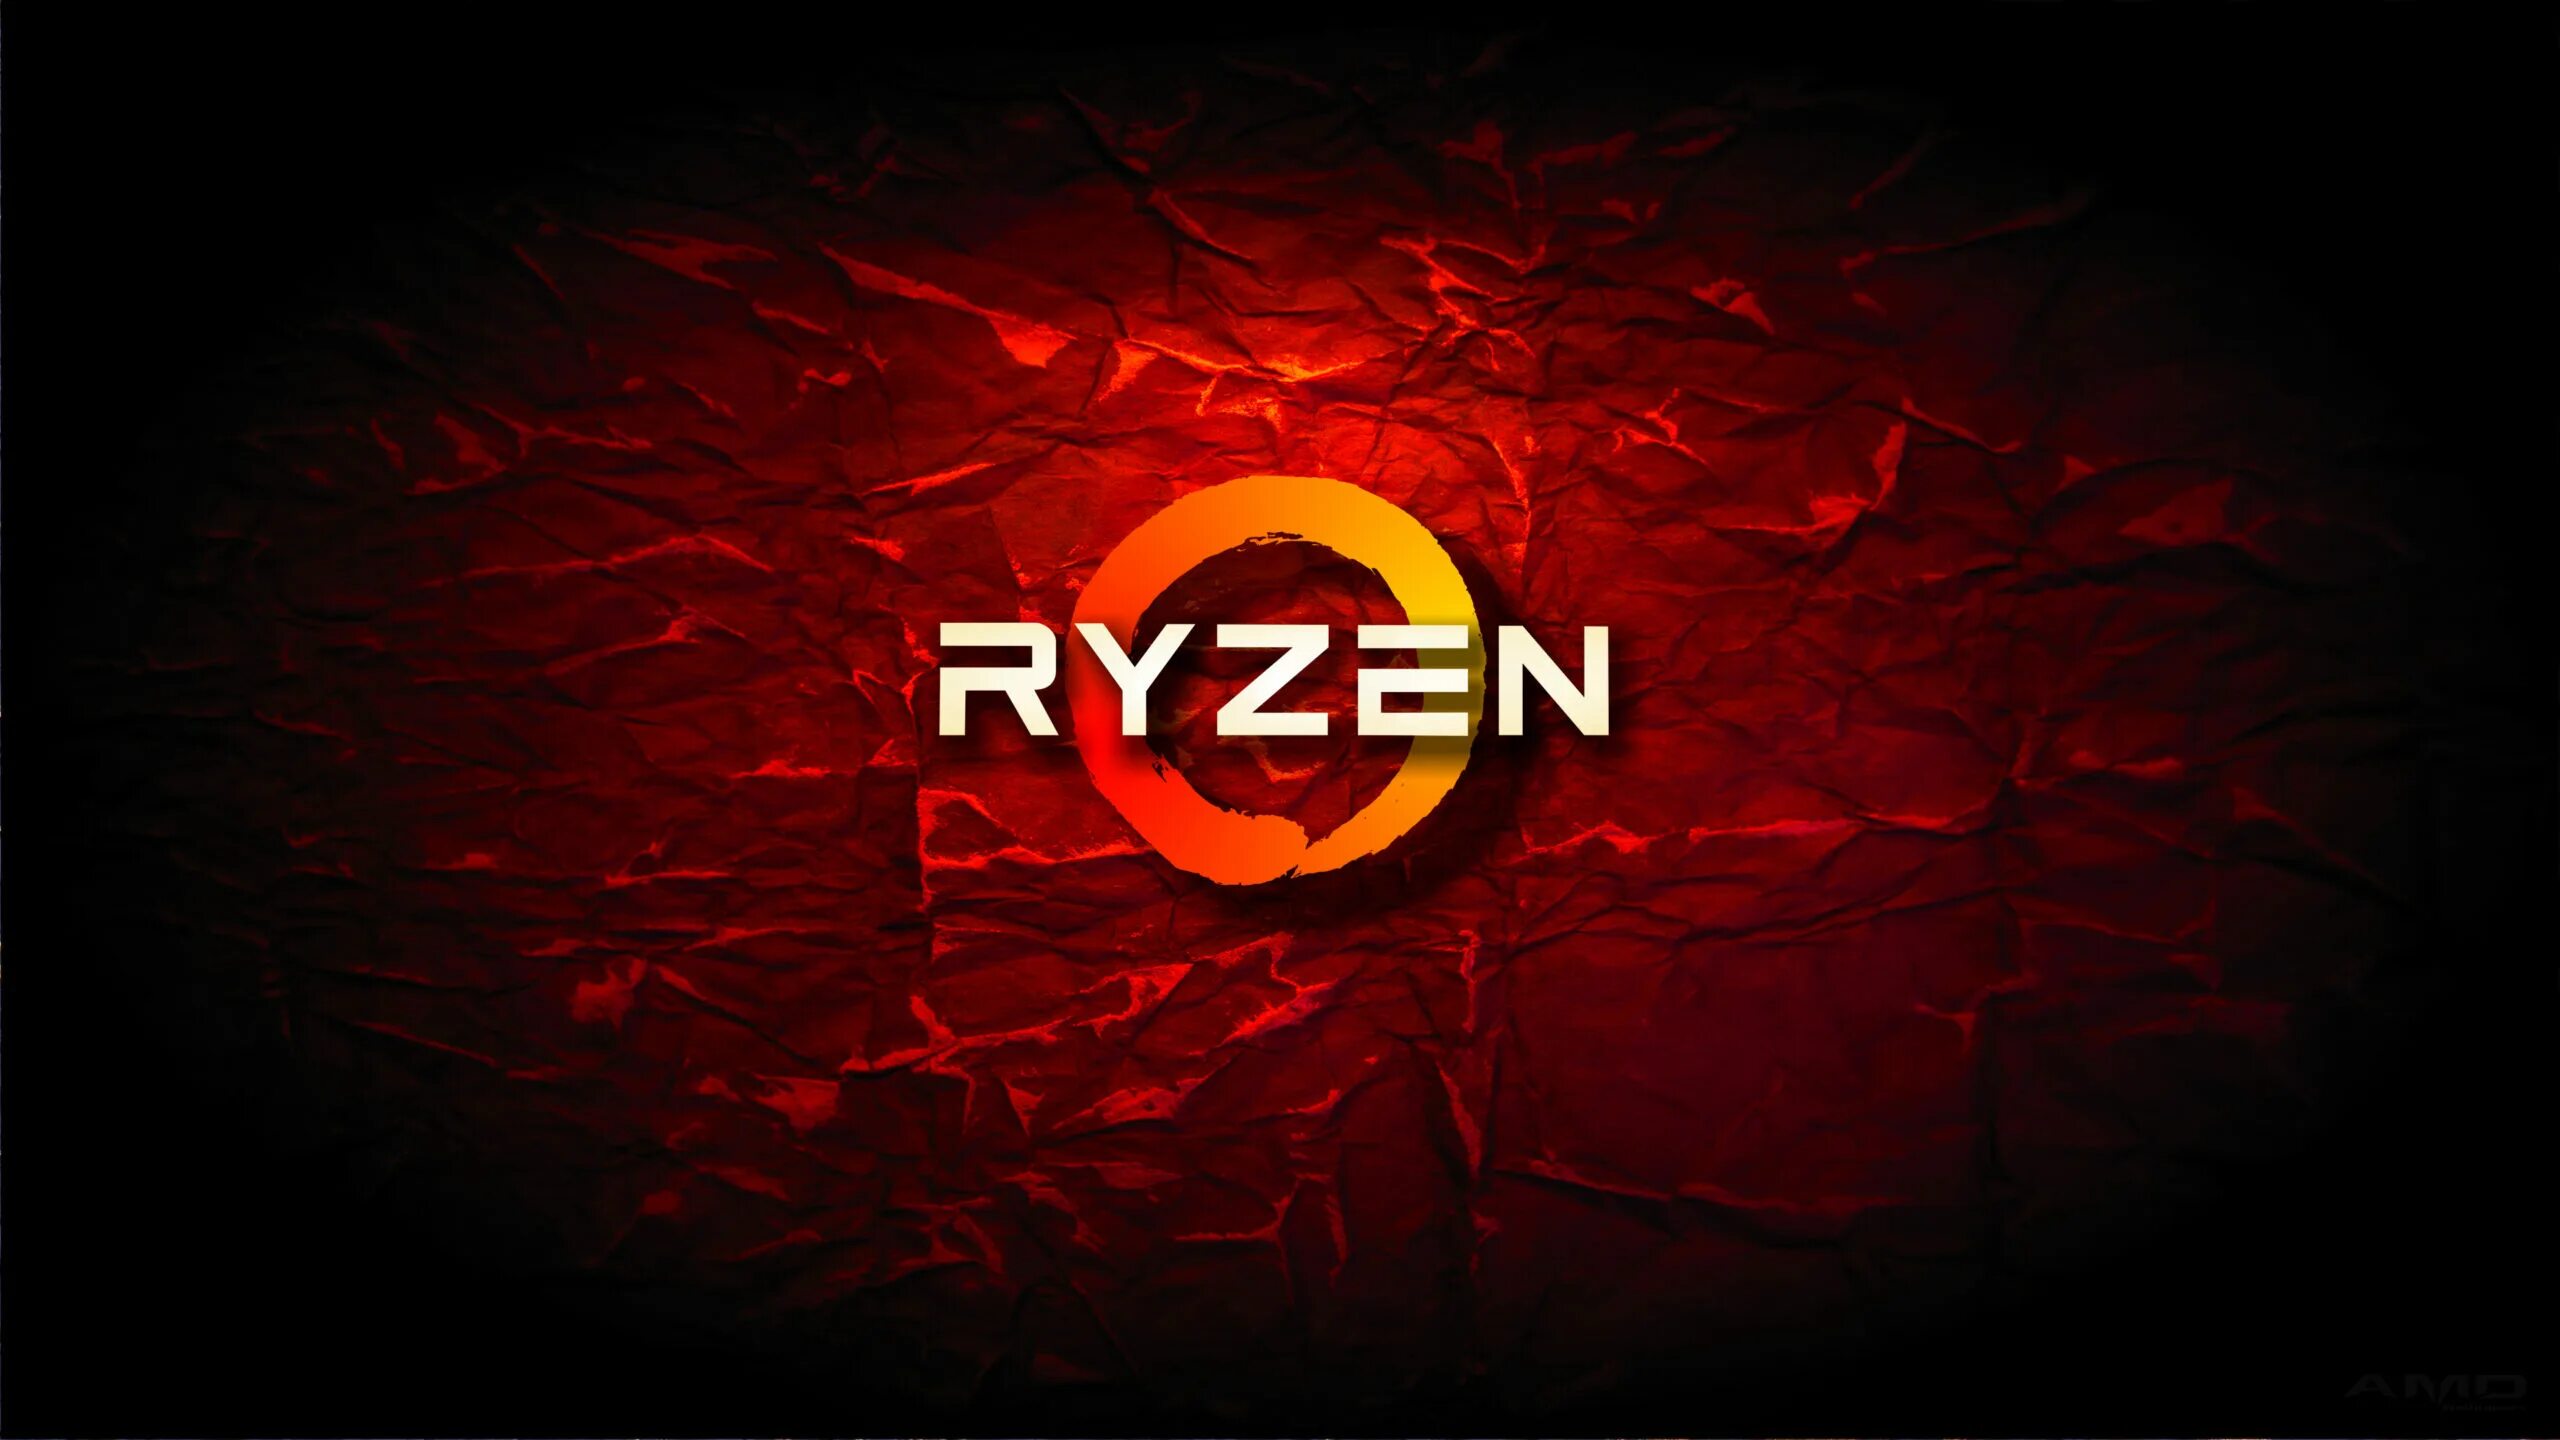 Ryzen 1920x1080. Ryzen логотип. Заставка Ryzen. Логотип АМД райзен. Картинки AMD Ryzen.